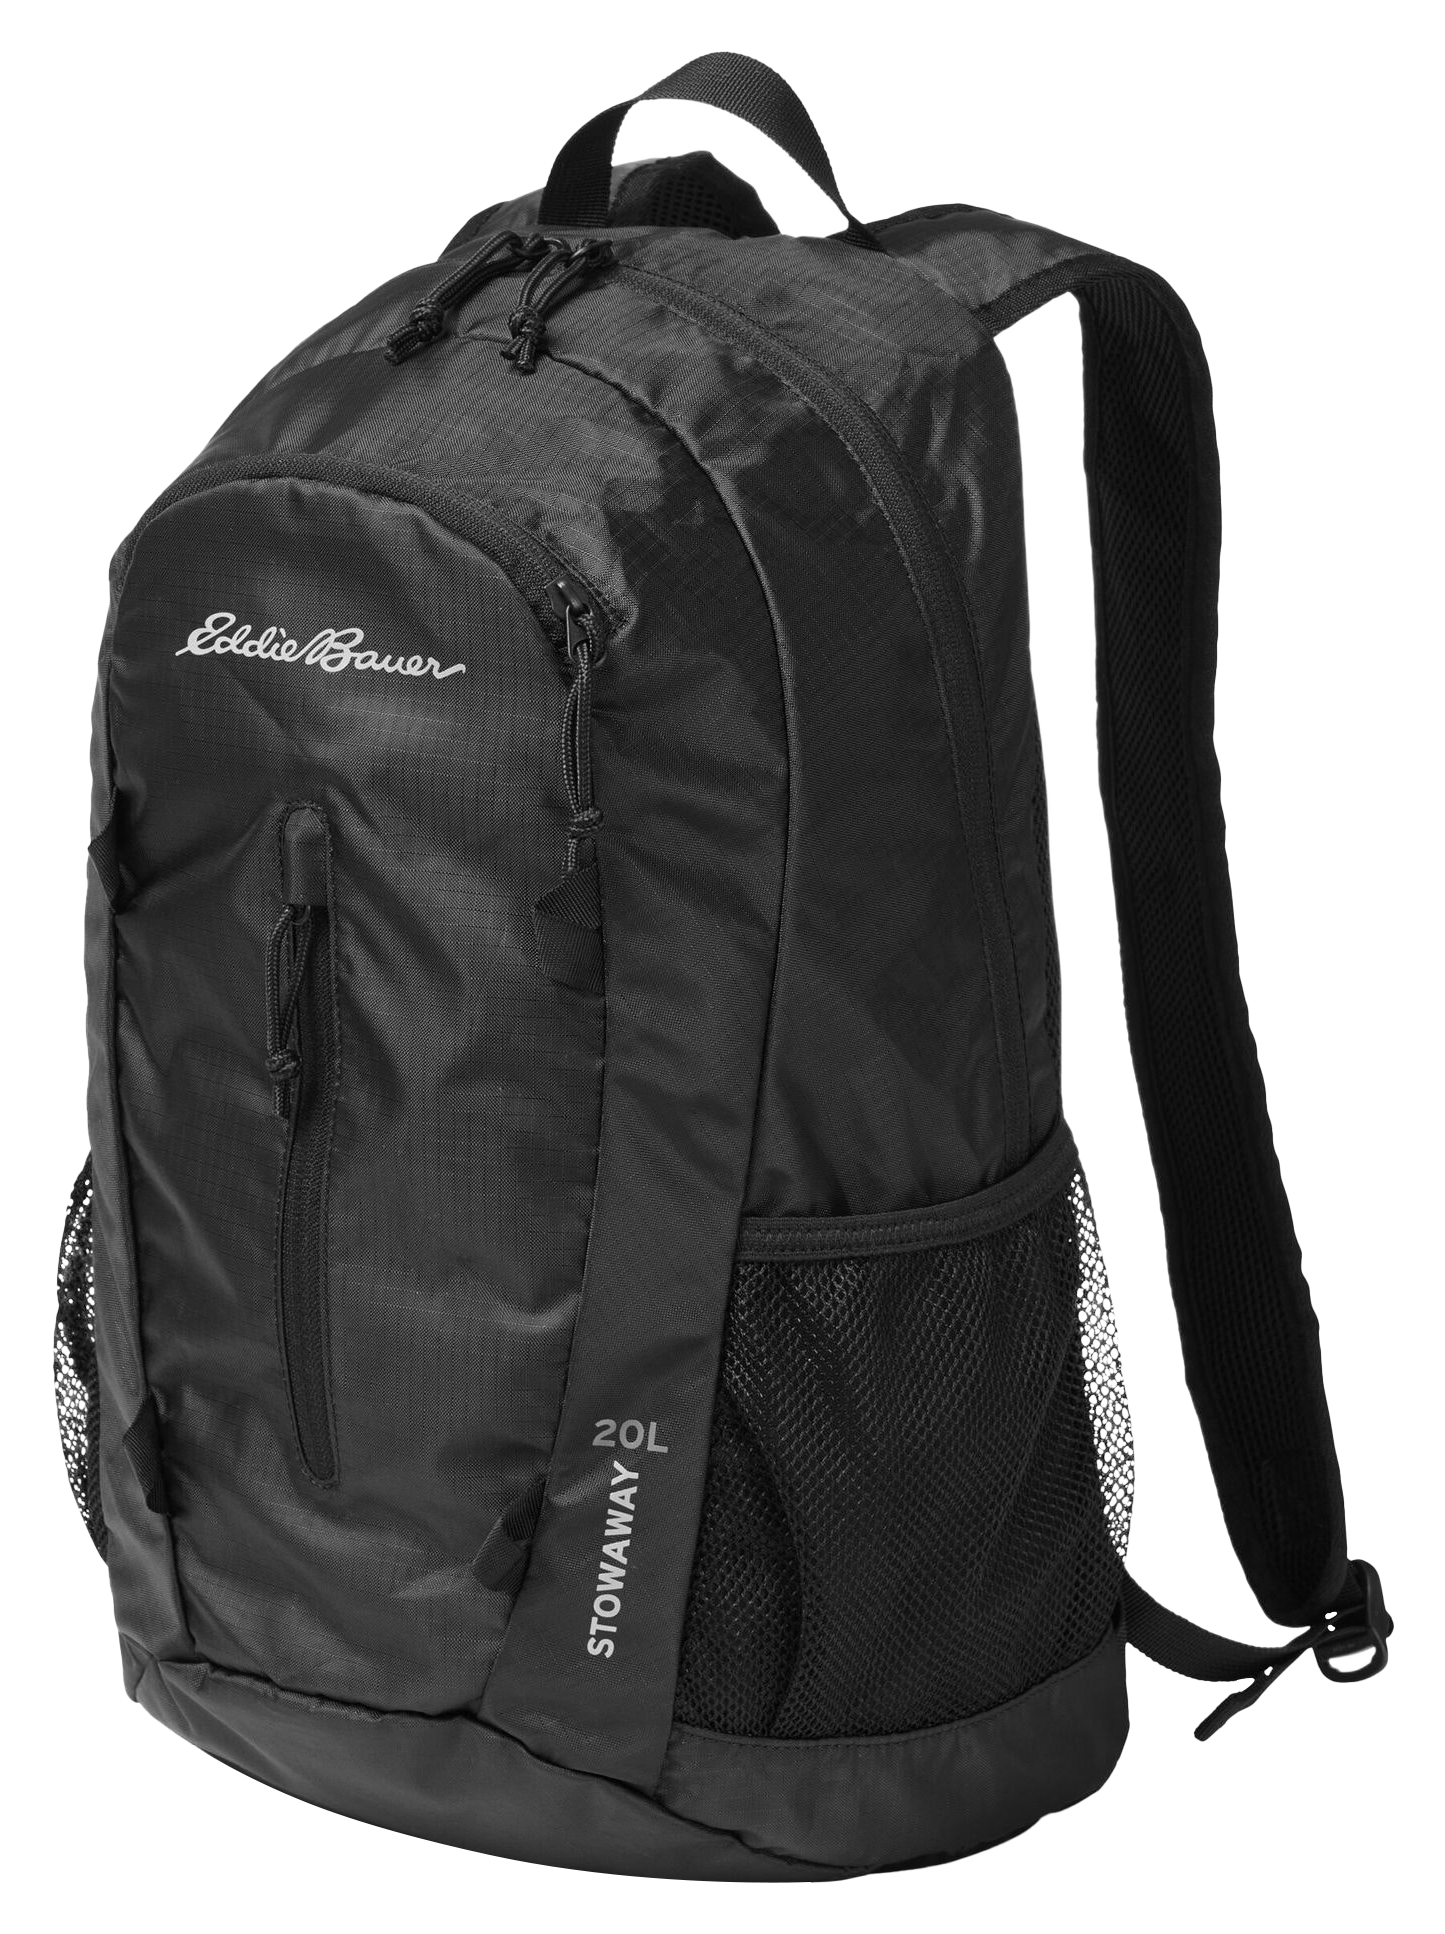 Eddie Bauer Stowaway Packable 20L Backpack - Onyx